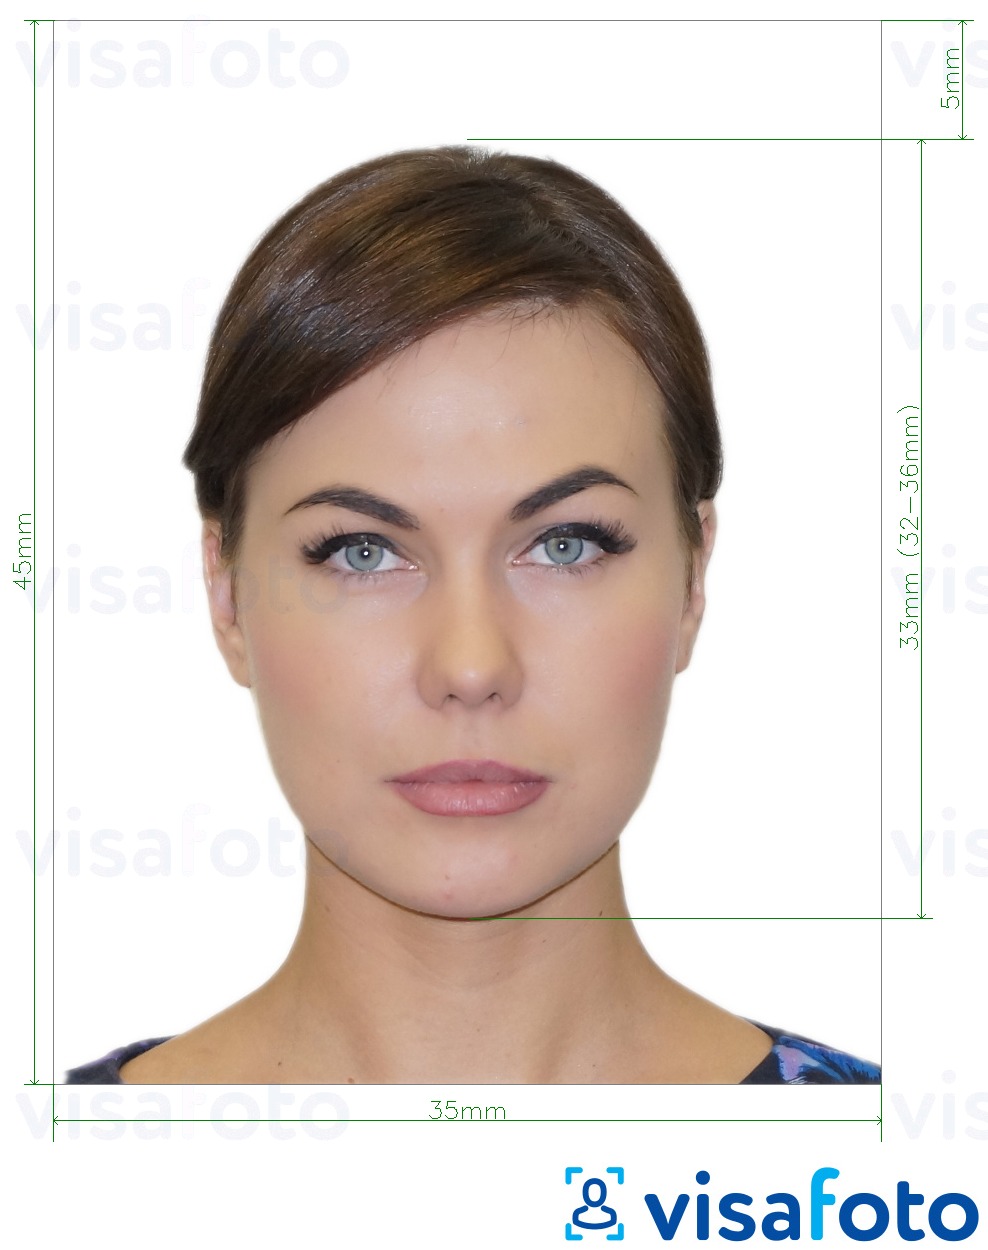 Nuotraukos pavyzdys Rusų ventiliatoriaus ID  pikselių su tikslaus dydžio specifikacija